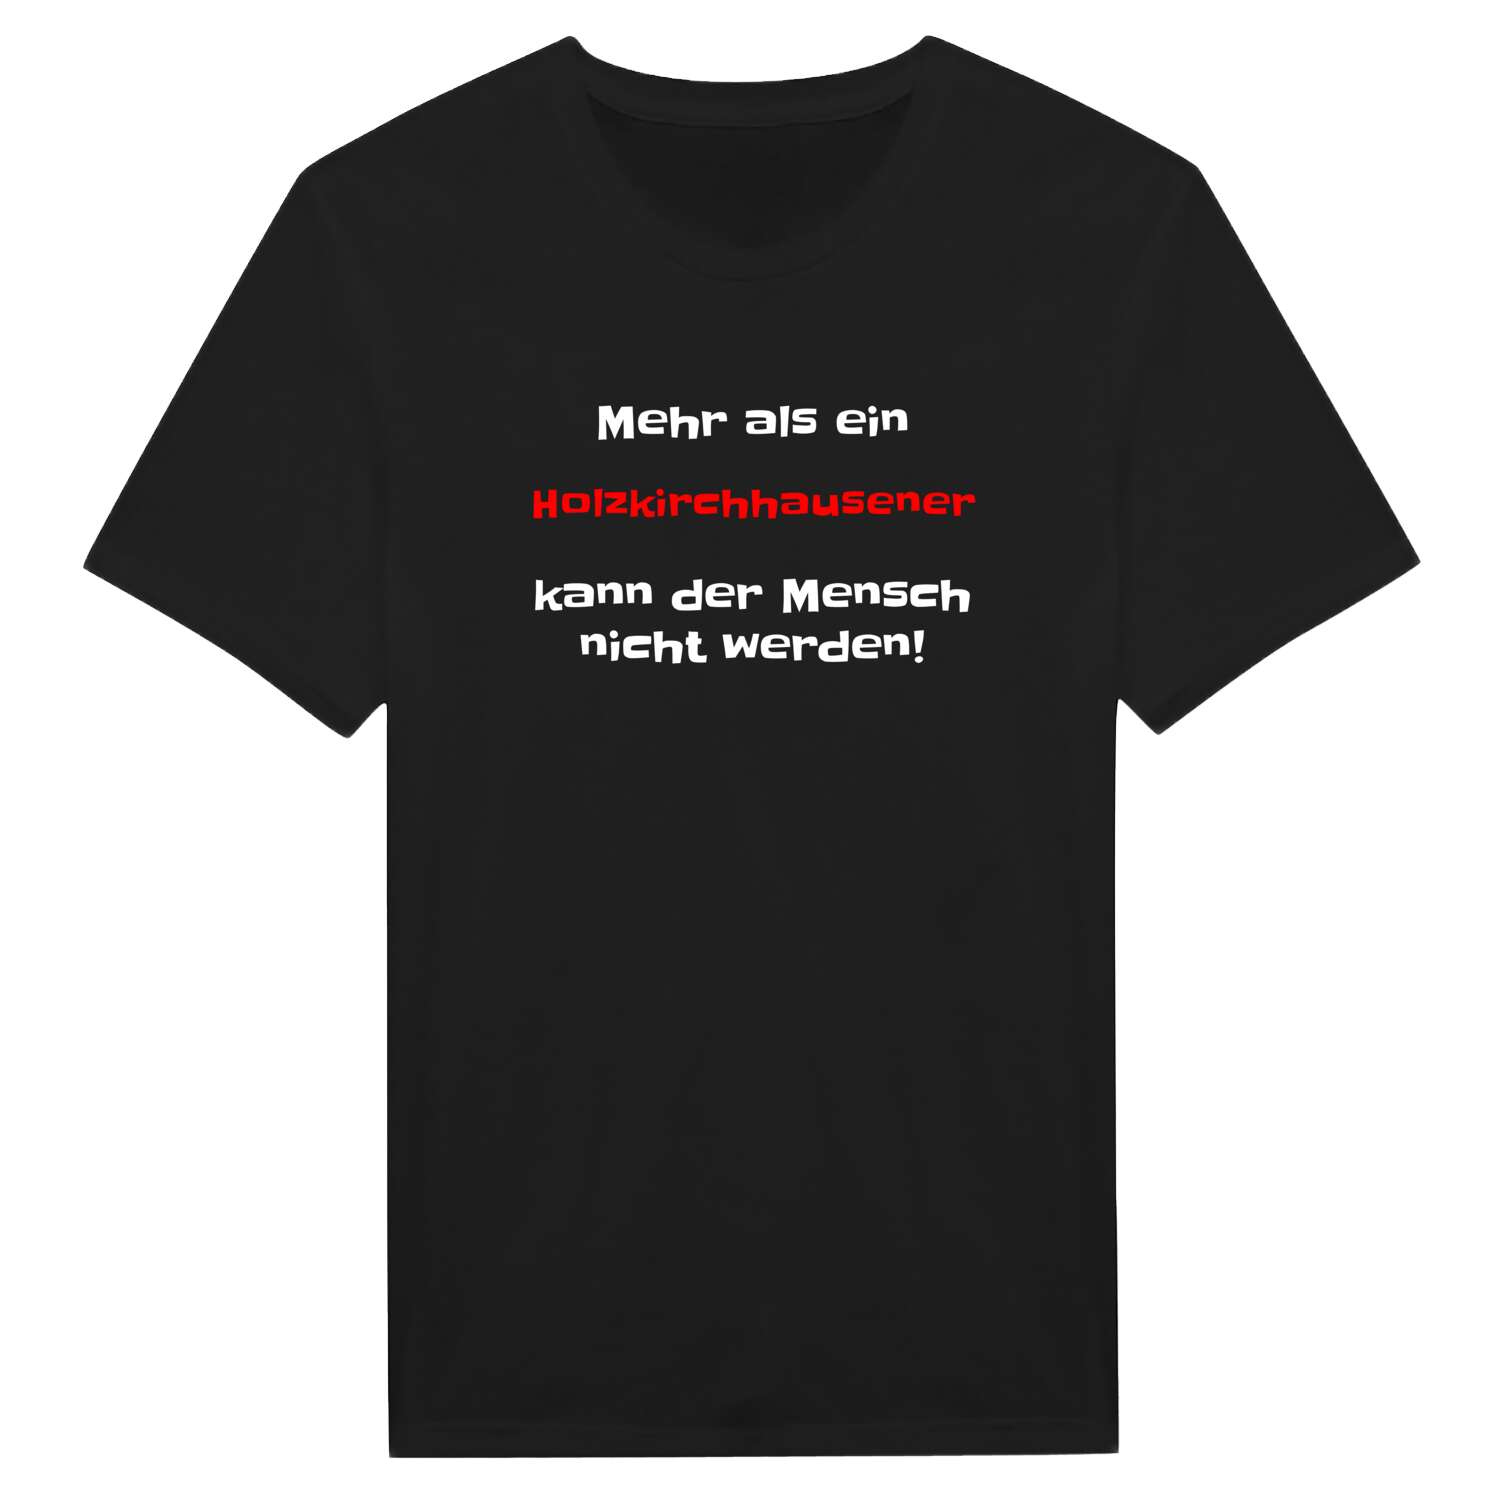 Holzkirchhausen T-Shirt »Mehr als ein«